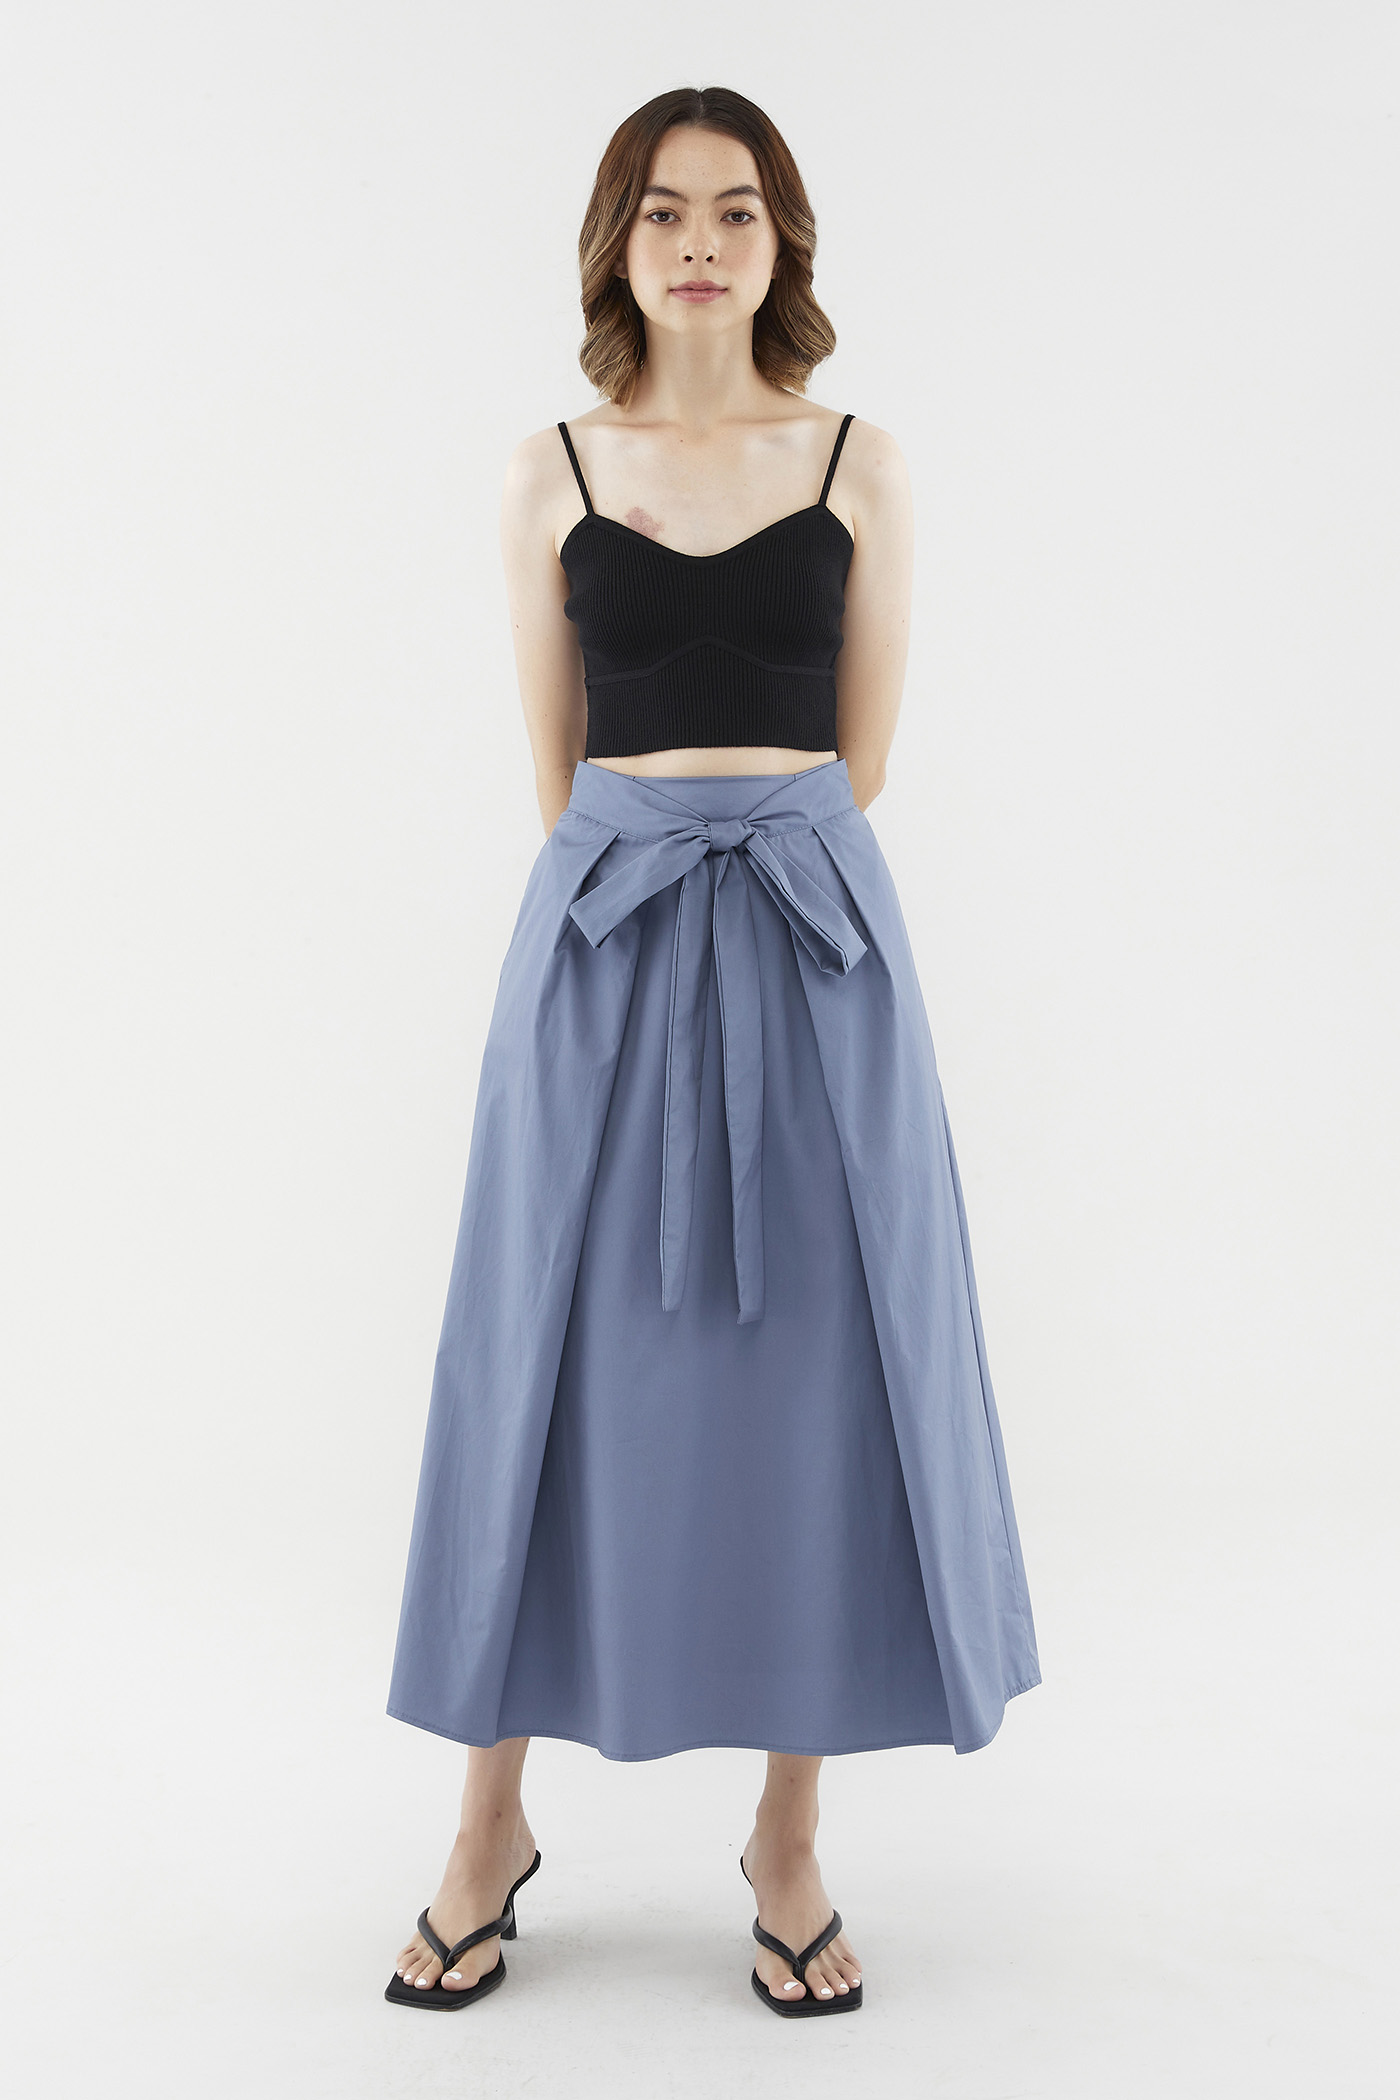 Ryley Tie-Front Midi Skirt